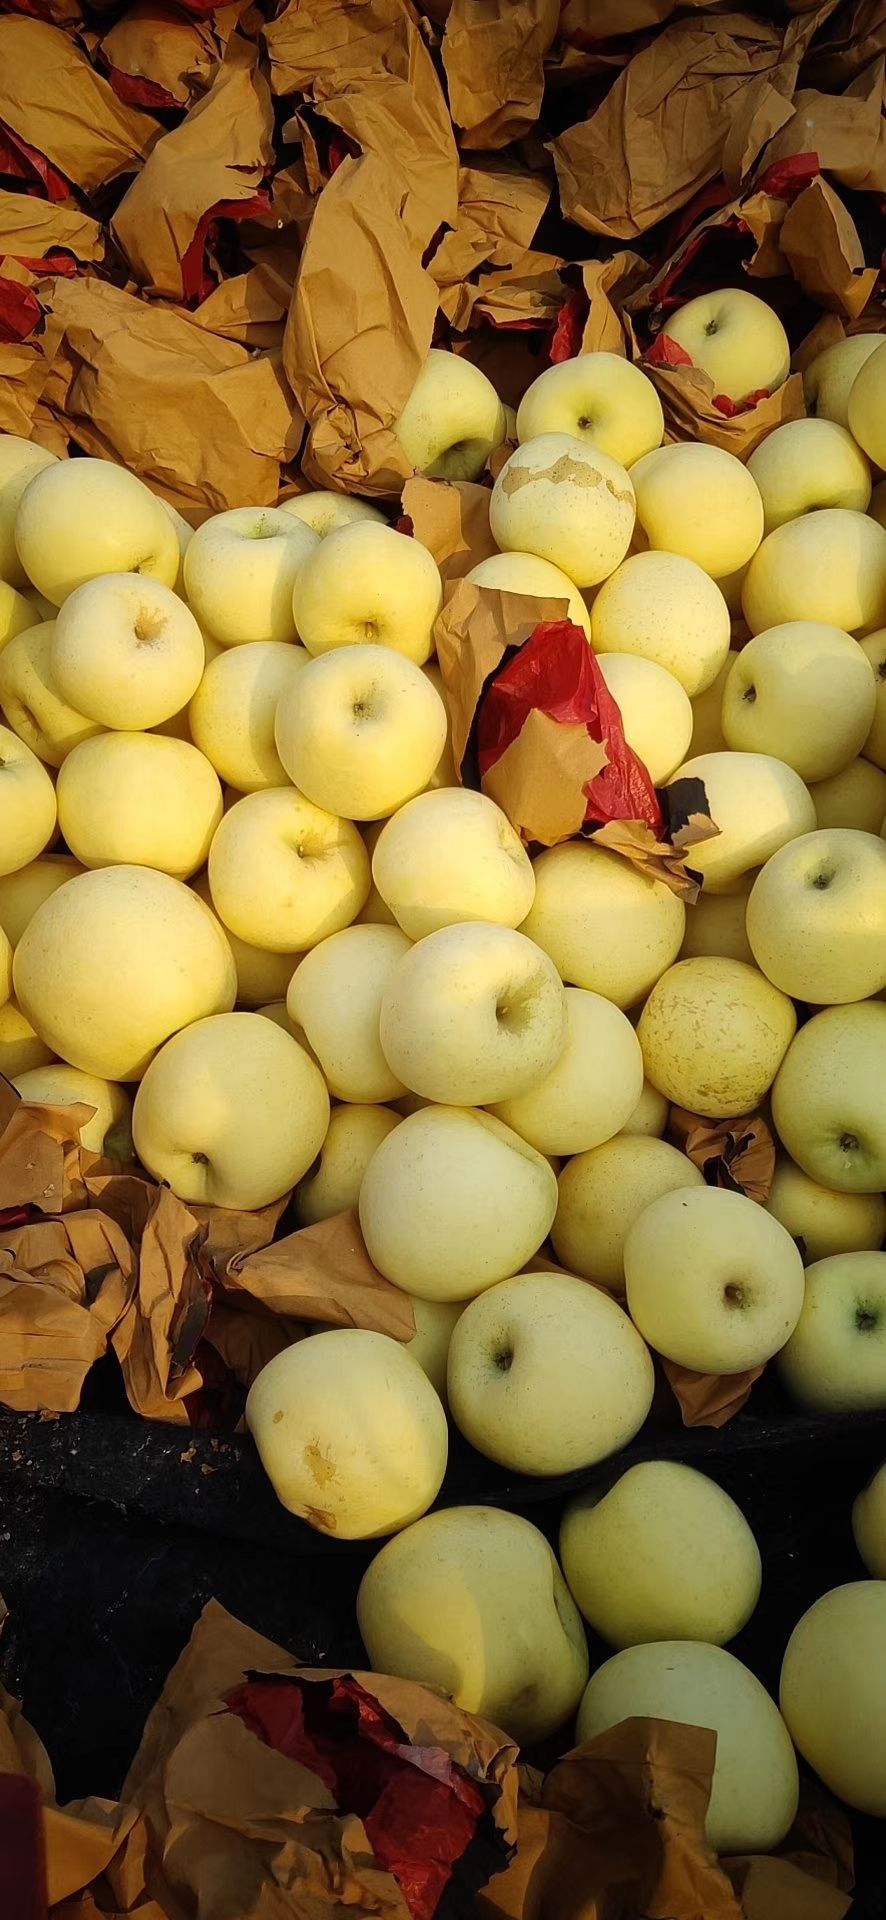 烟台黄金奶油富士丑苹果,奶油富士精品果,条红,片红,果园直采